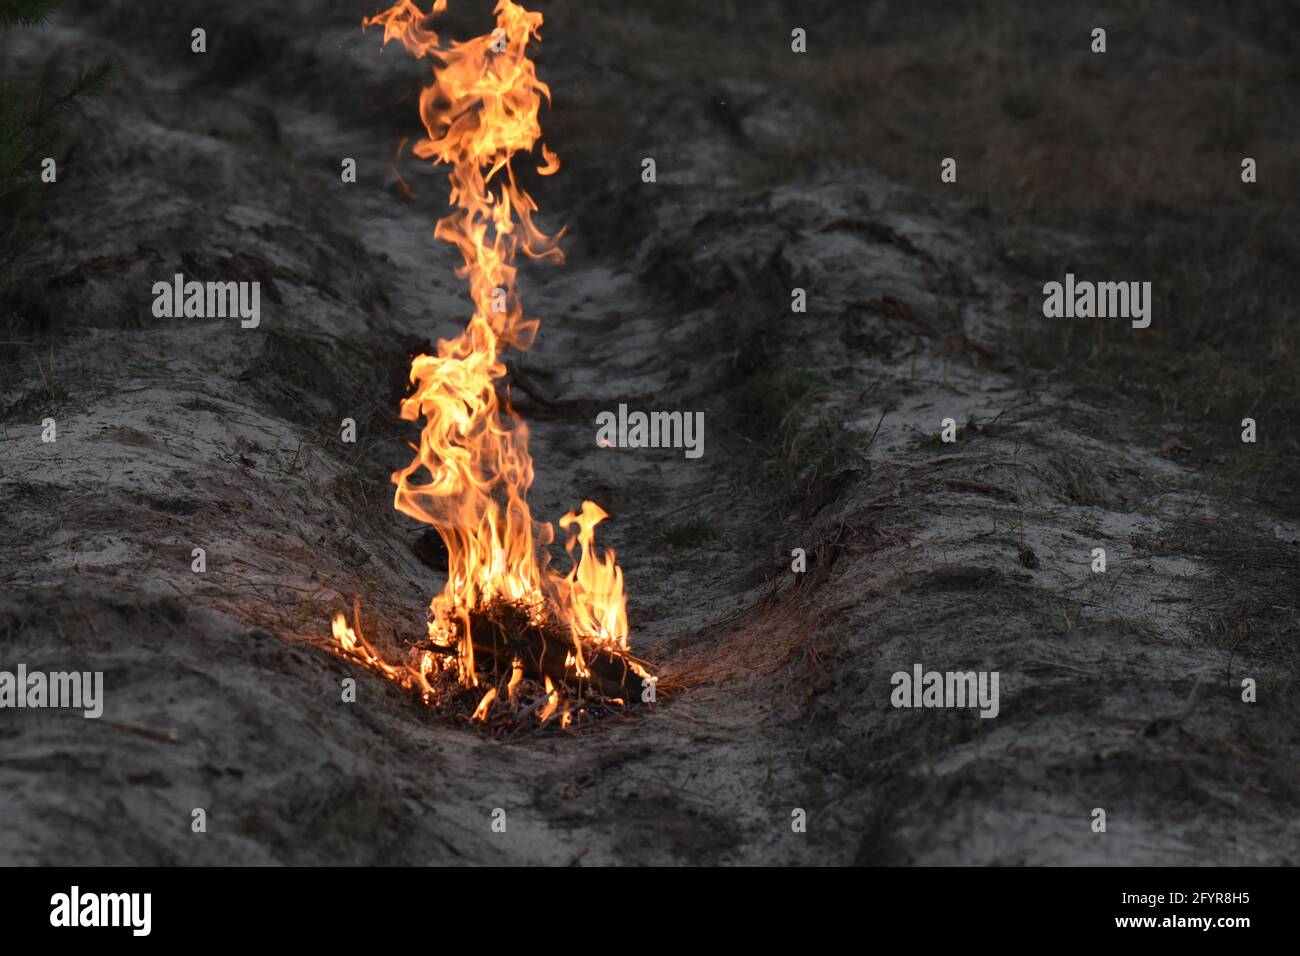 Le feu flamboyant de brindilles brûlantes et de bois de chauffage sur le champ sec Banque D'Images